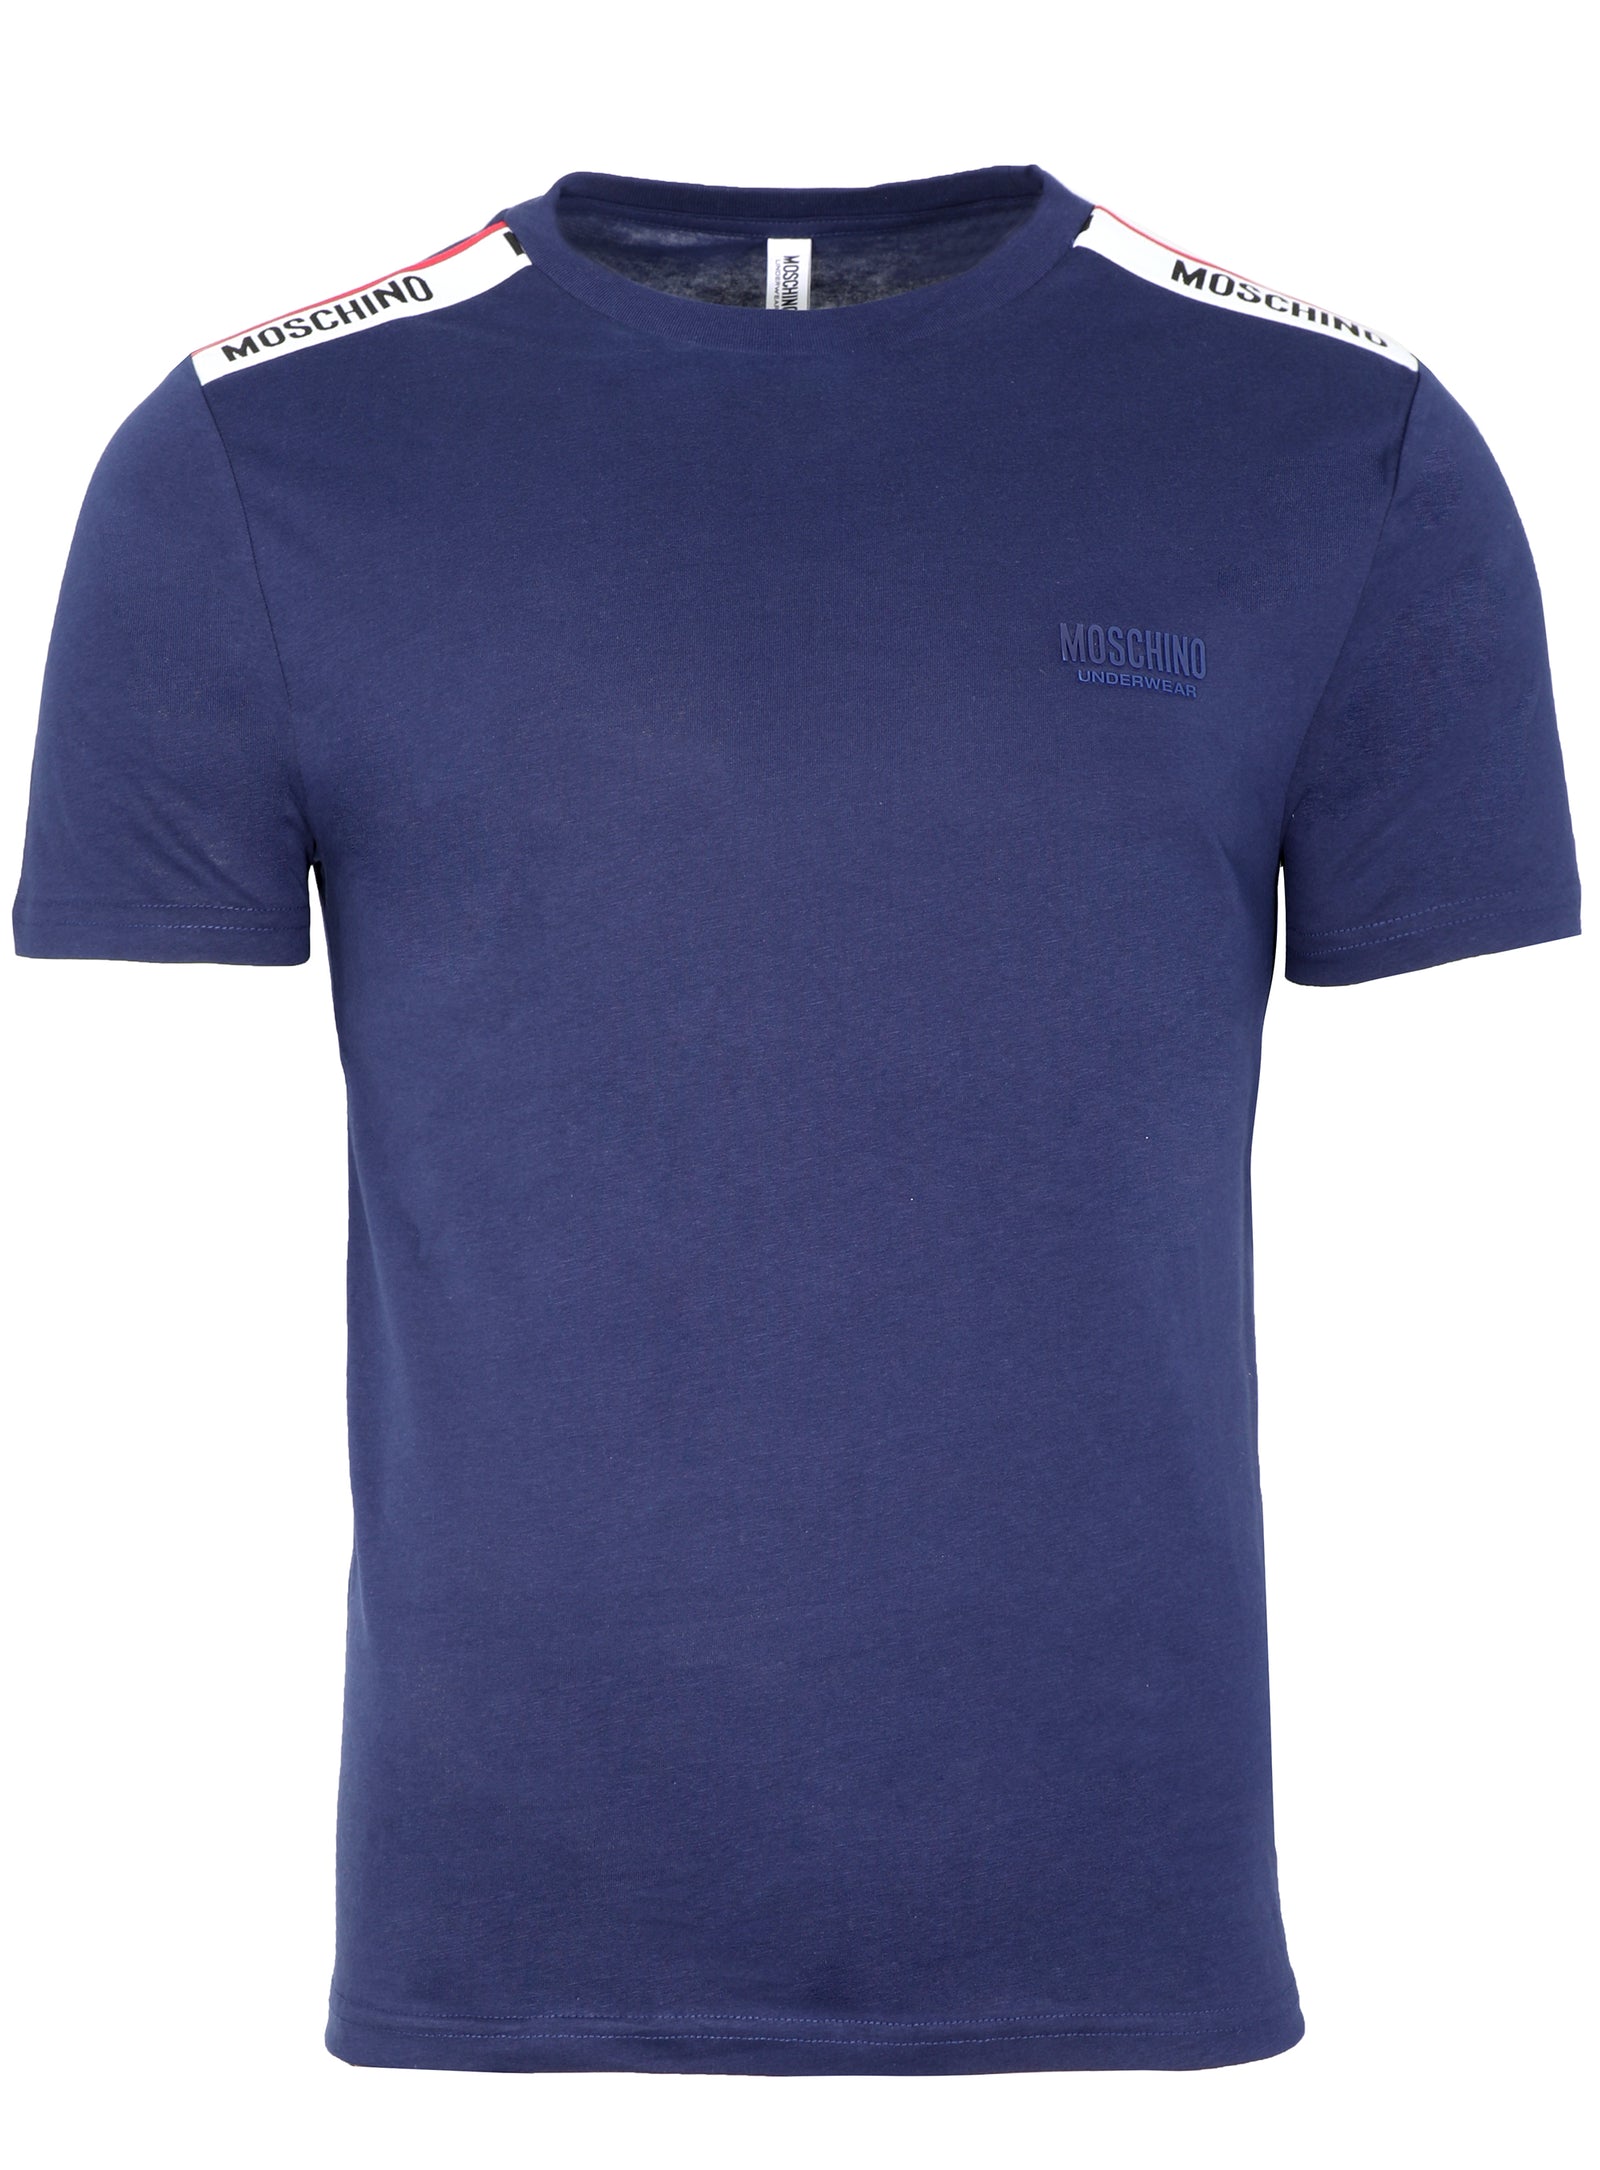 MOSCHINO UNDERWEAR: t-shirt for man - Blue